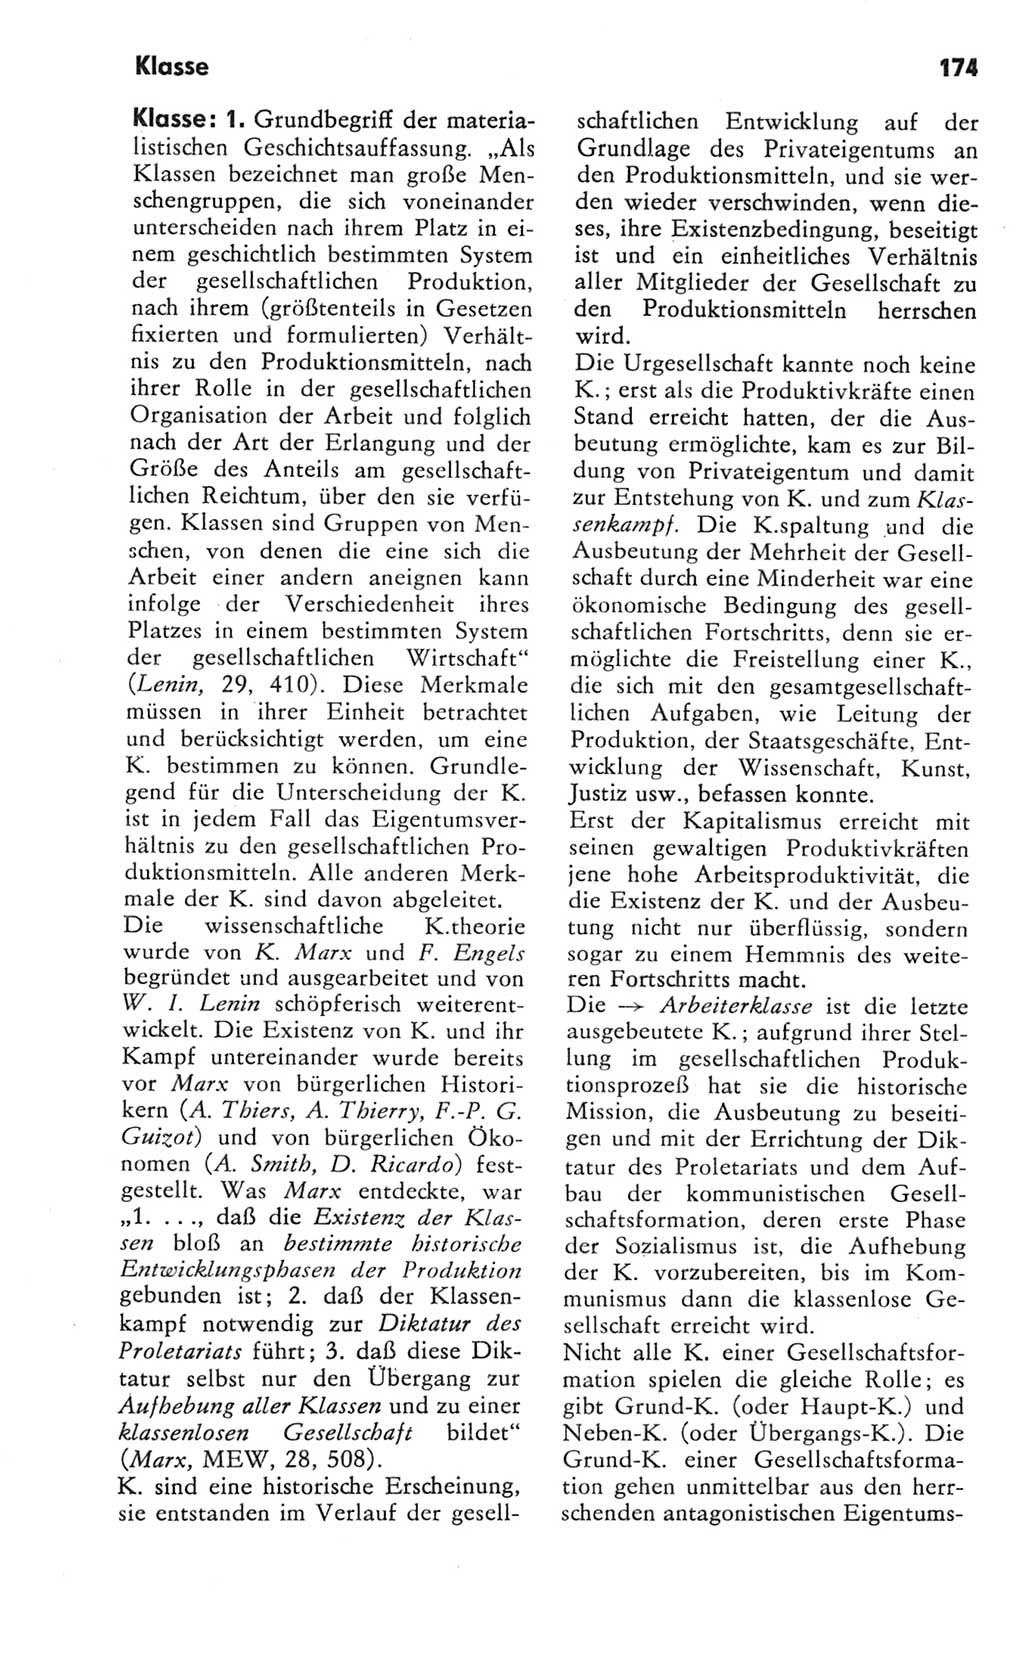 Kleines Wörterbuch der marxistisch-leninistischen Philosophie [Deutsche Demokratische Republik (DDR)] 1981, Seite 174 (Kl. Wb. ML Phil. DDR 1981, S. 174)